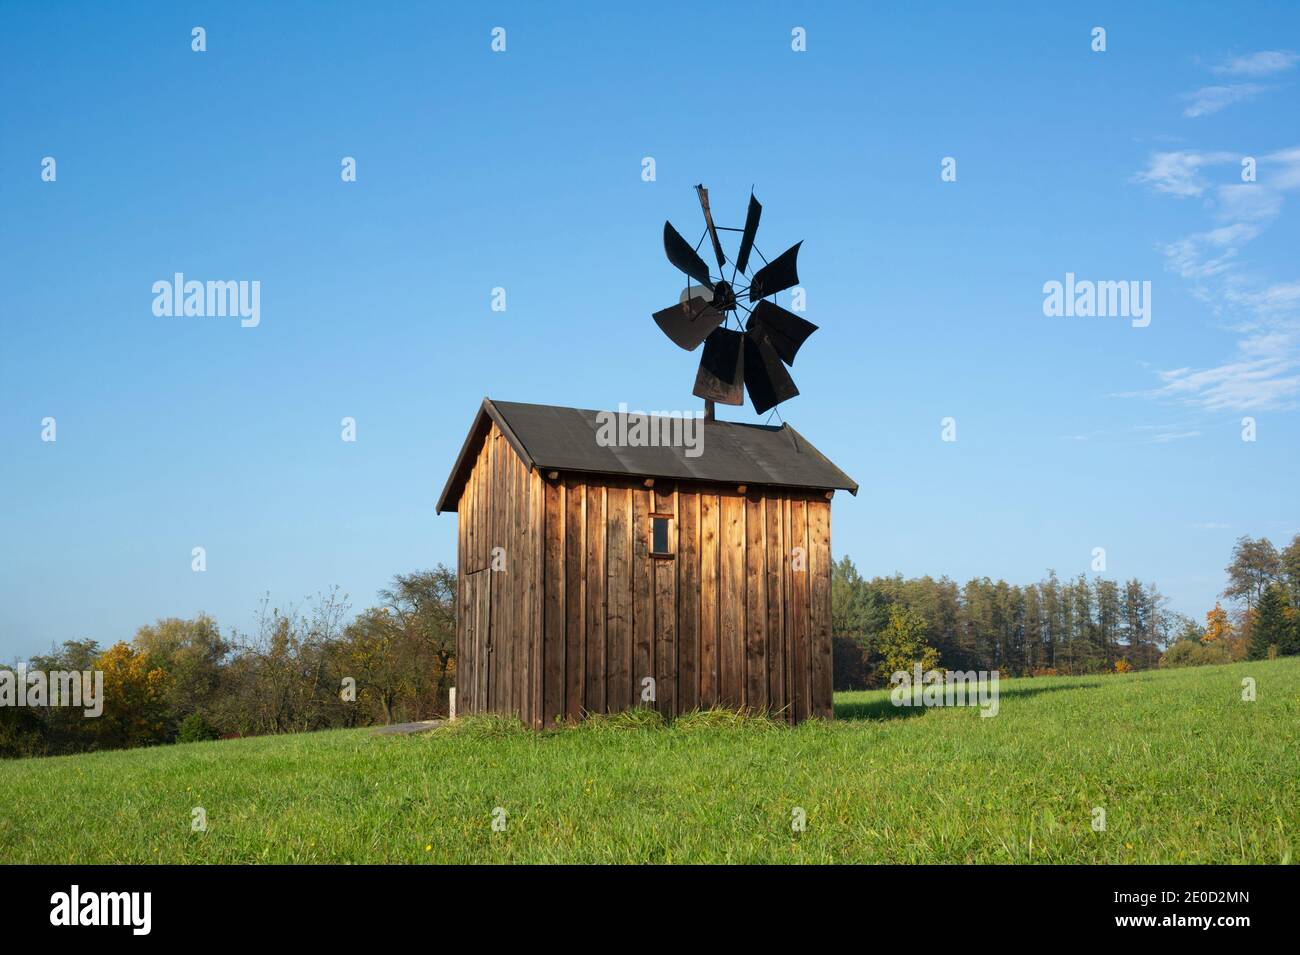 Alte verlassene Windmühle - Holzgebäude mit Propeller und Segel. Gerät und Technologie zur Erzeugung erneuerbarer Energie aus Windkraft. Architektur auf m Stockfoto